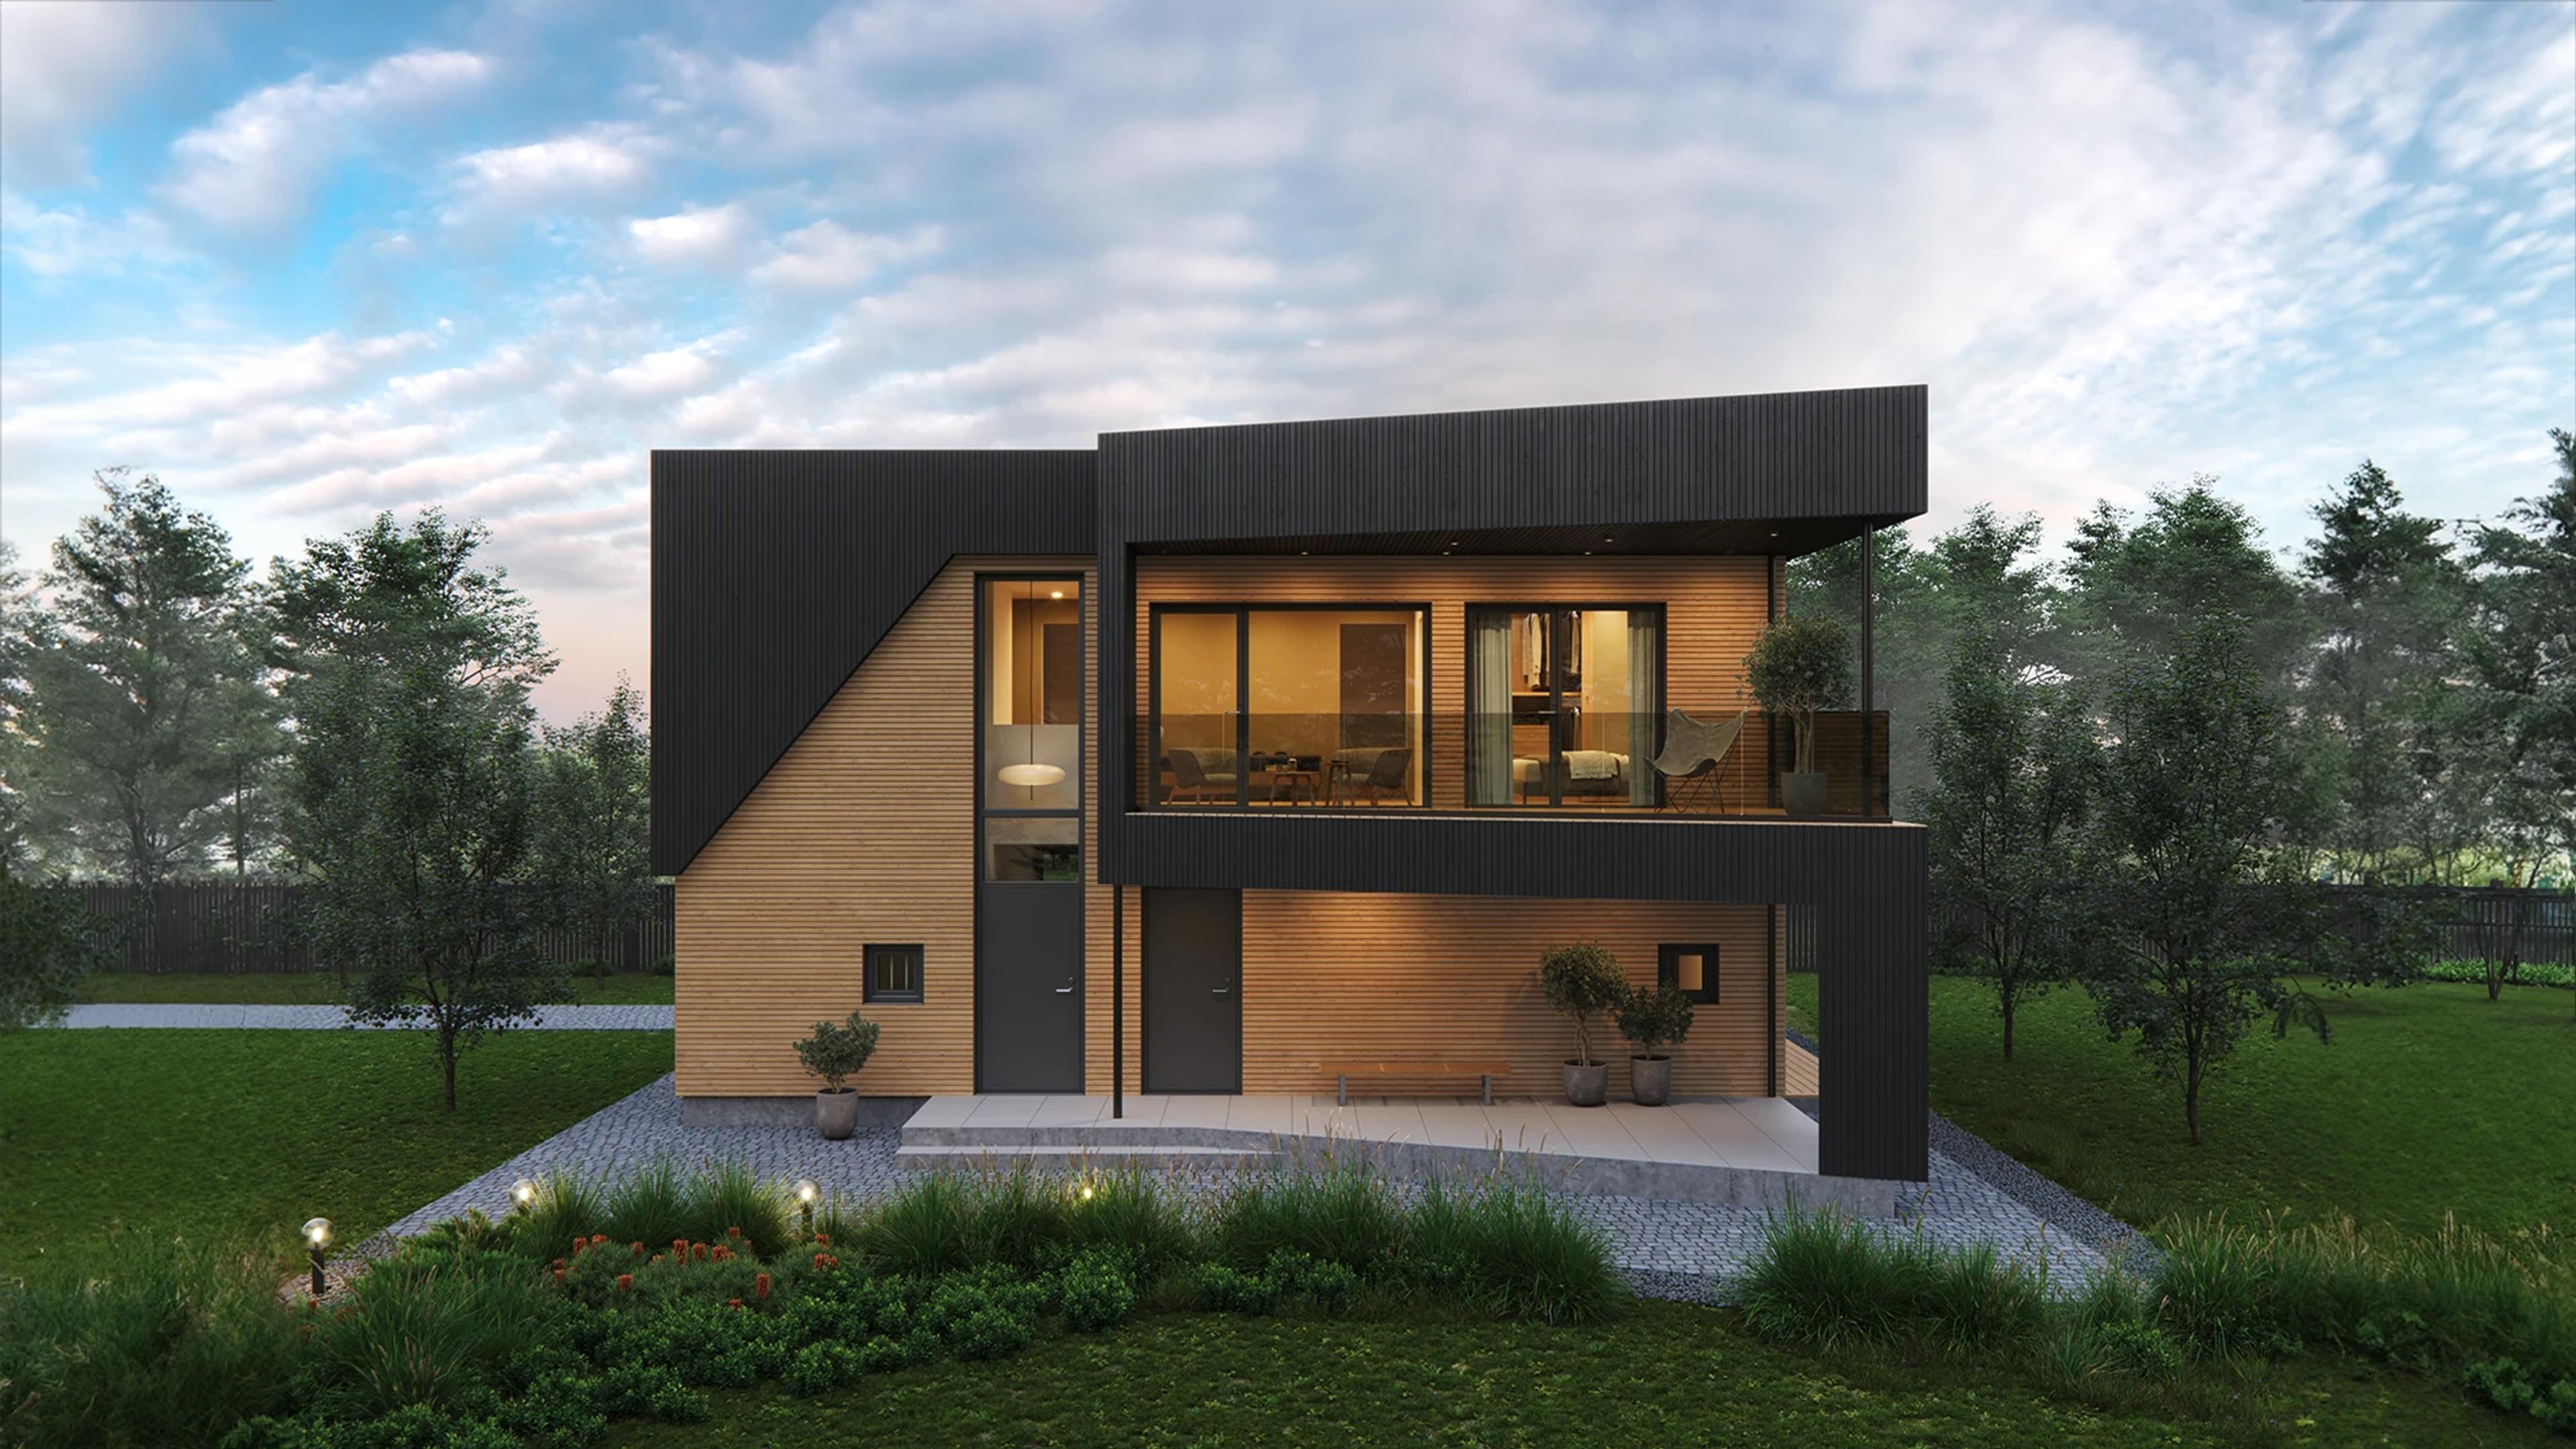 Form 2.0 - fleksibelt og moderne hus 